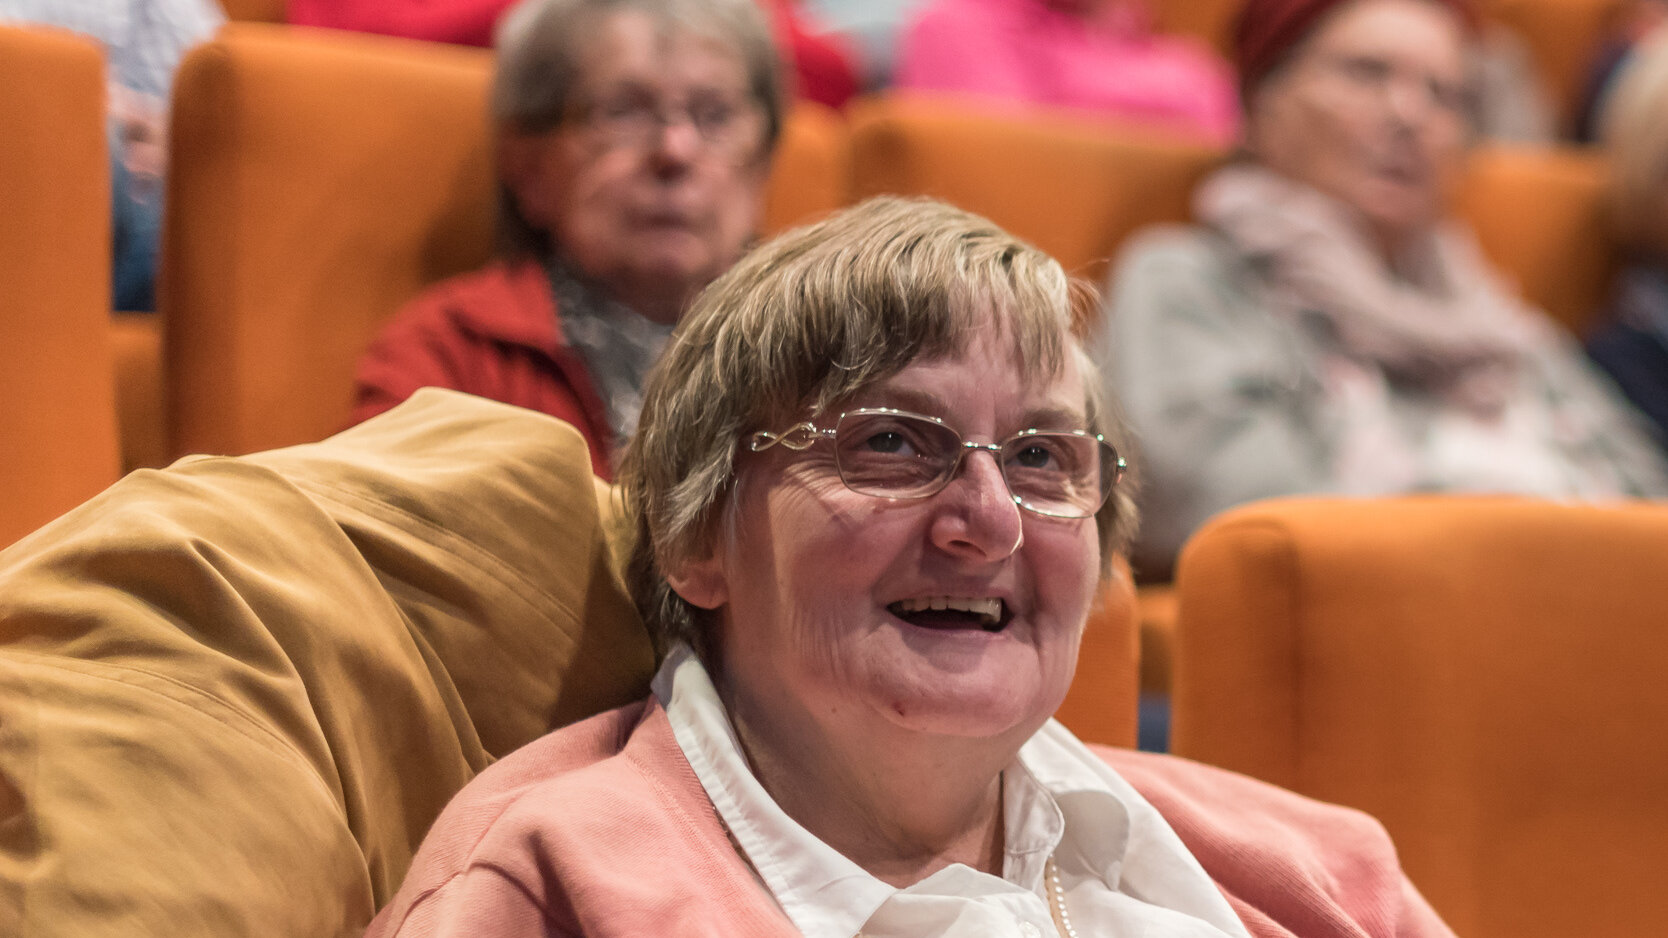 Mehrere ältere Menschen sitzen in einem Kinosaal. Im vorderen Teil des Fotos sieht man eine lachende Zuschauerin.